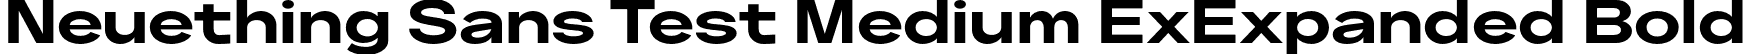 Neuething Sans Test Medium ExExpanded Bold font - NeuethingVariableTest-BoldExtraExpanded.otf